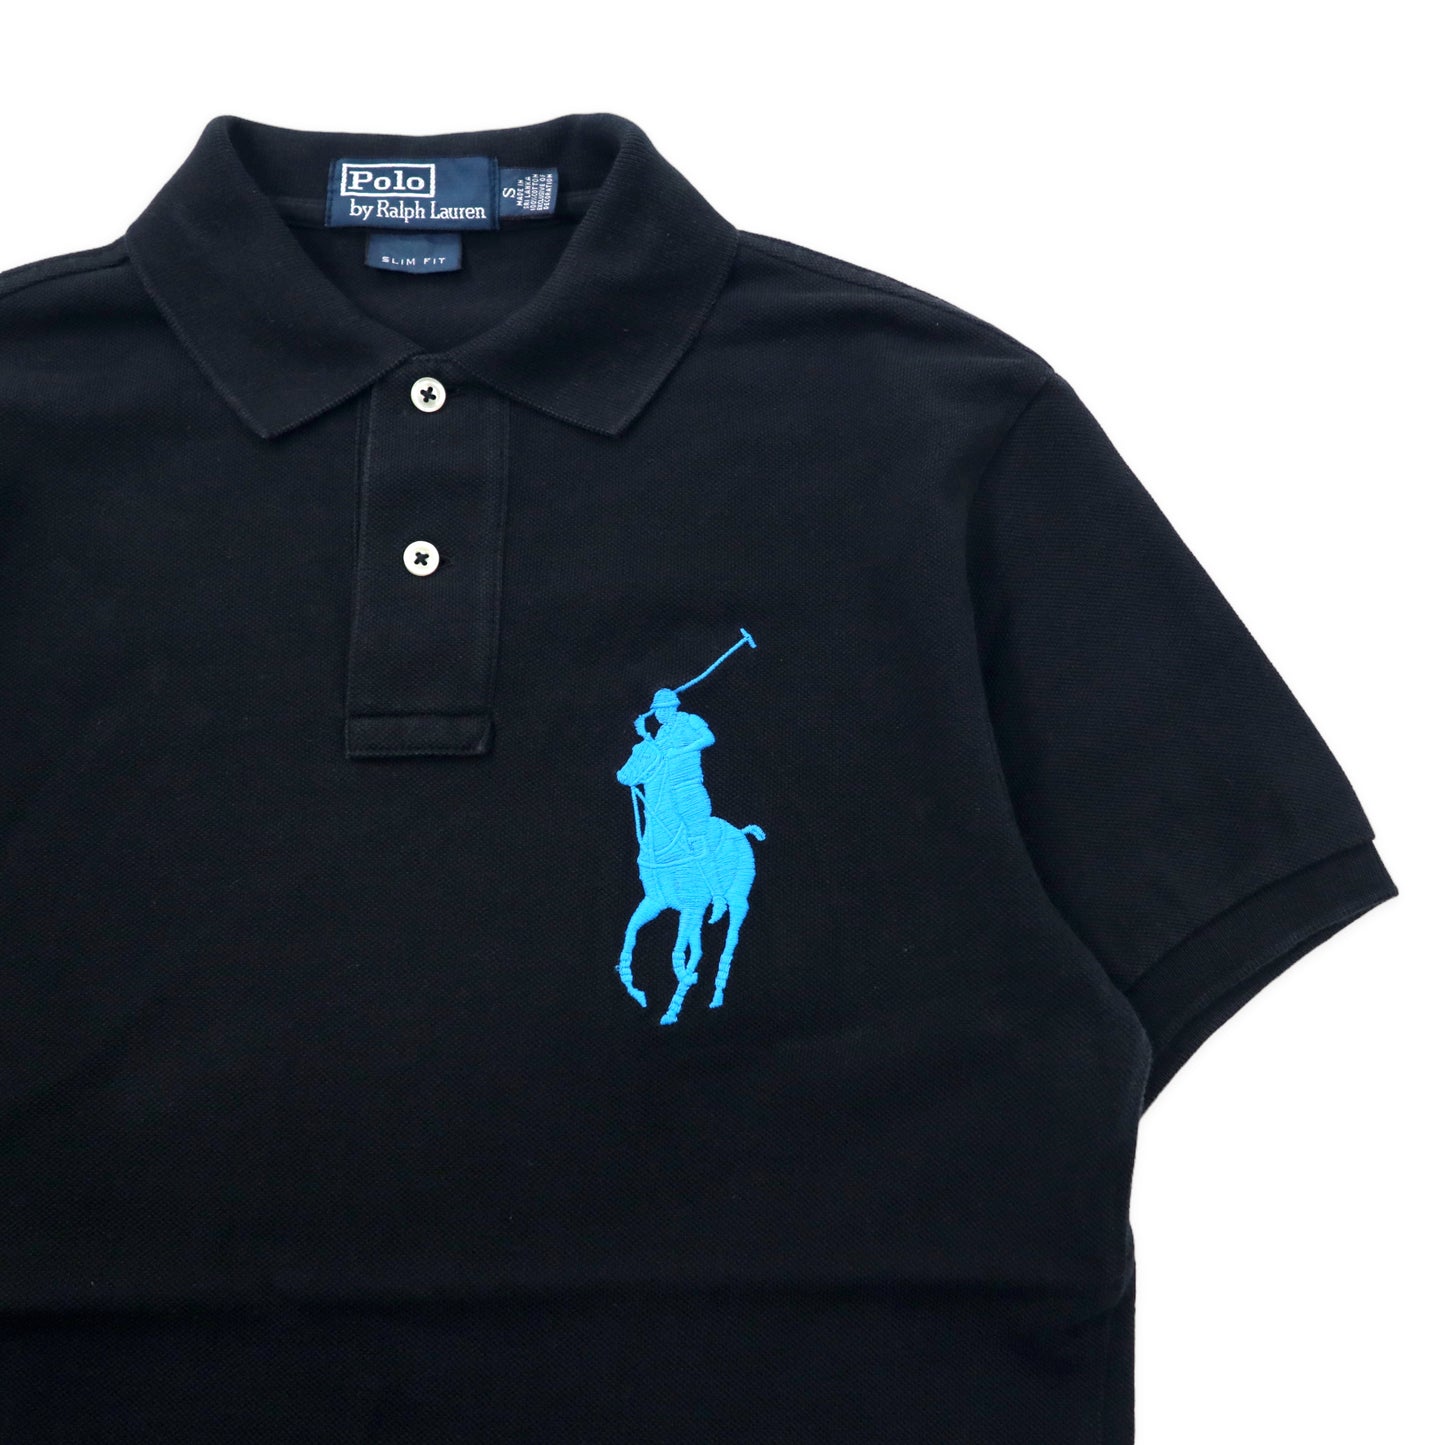 Polo by Ralph Lauren ビッグポニー ポロシャツ S ブラック コットン